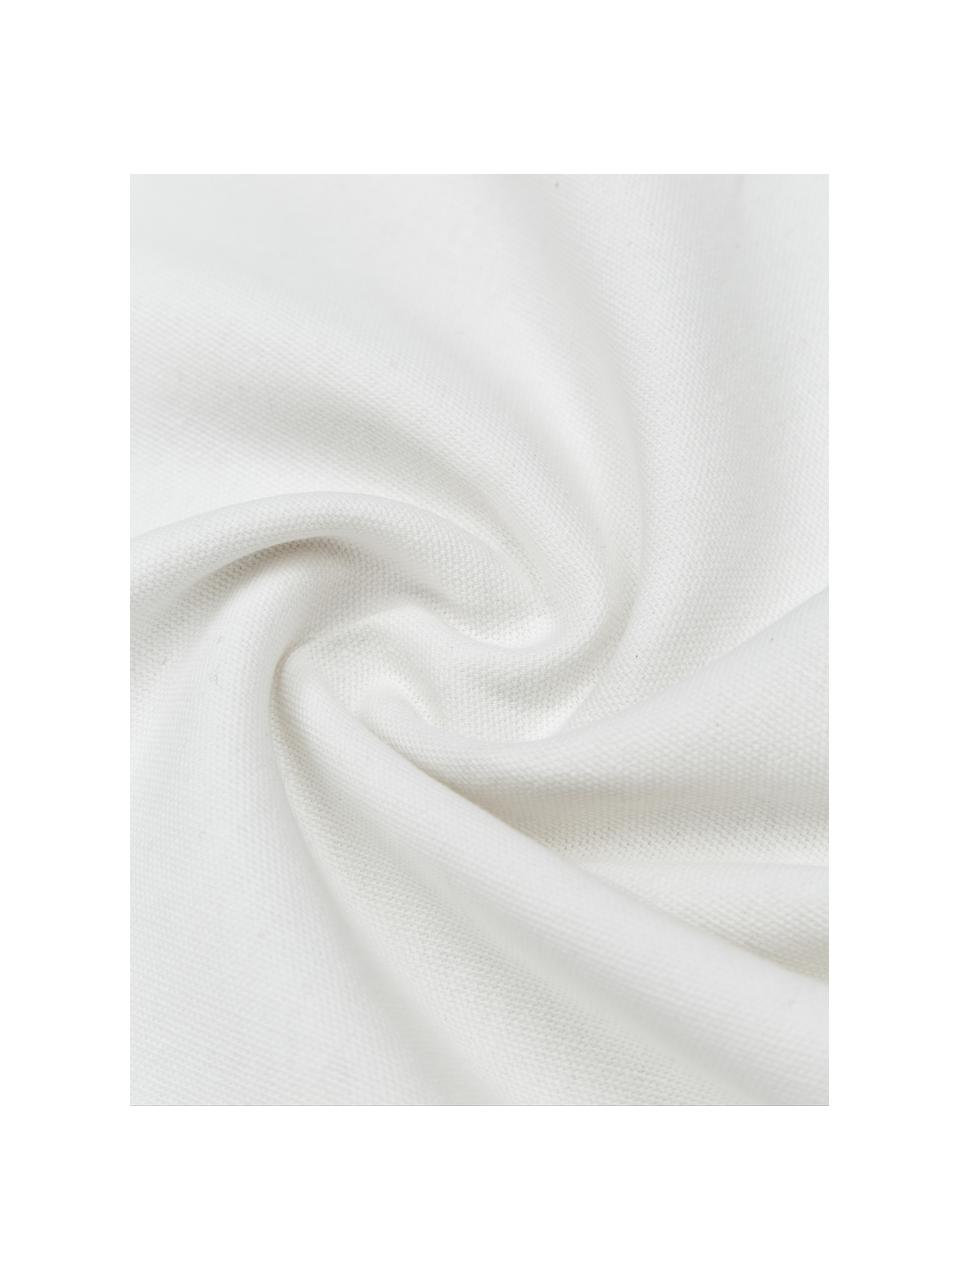 Bestickte Baumwoll-Kissenhülle Finca mit Fransen, 100% Baumwolle, Weiß, Blau, B 50 x L 50 cm